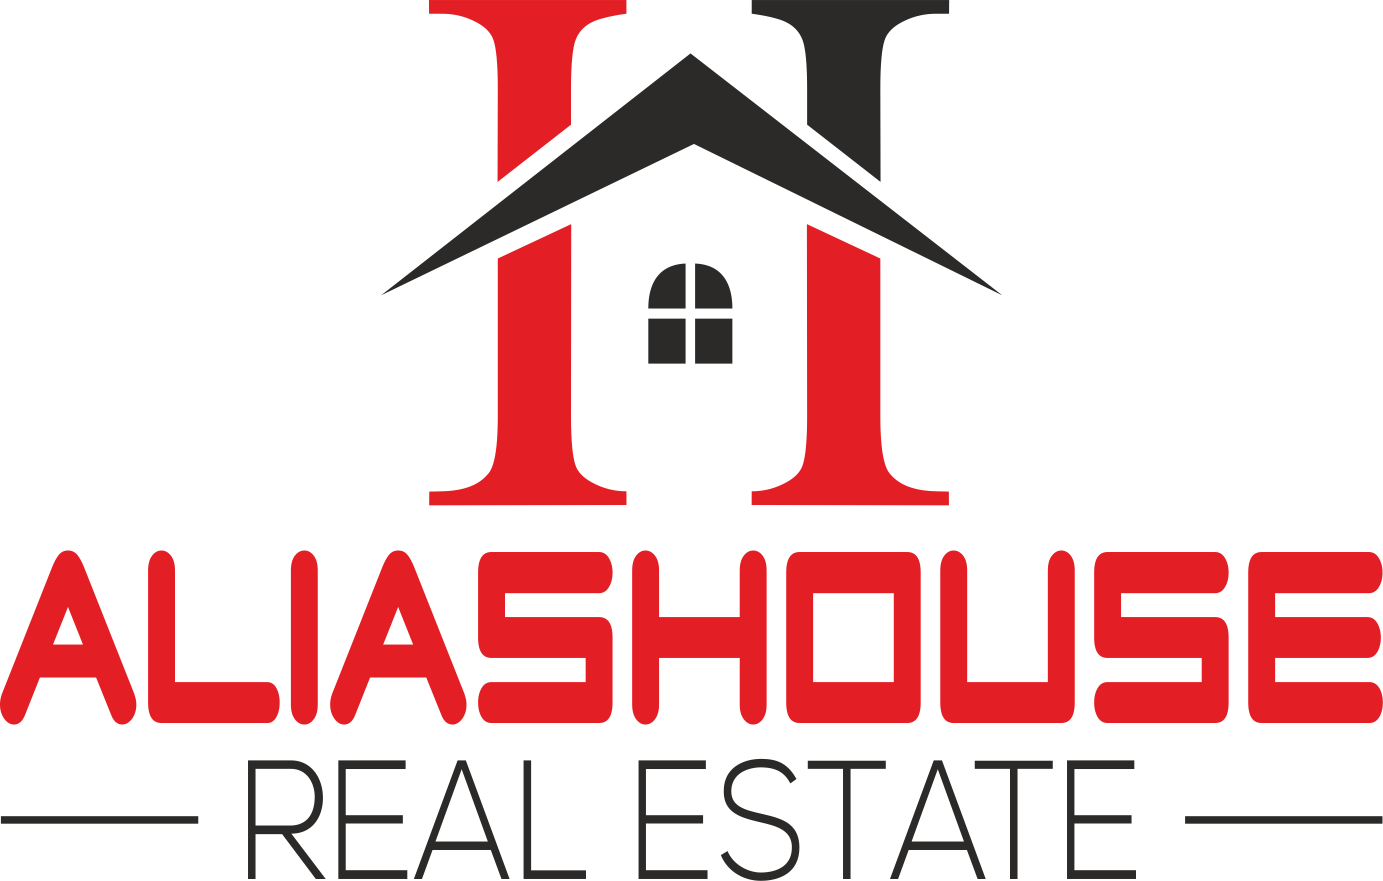 AliasHouse - Real Estate